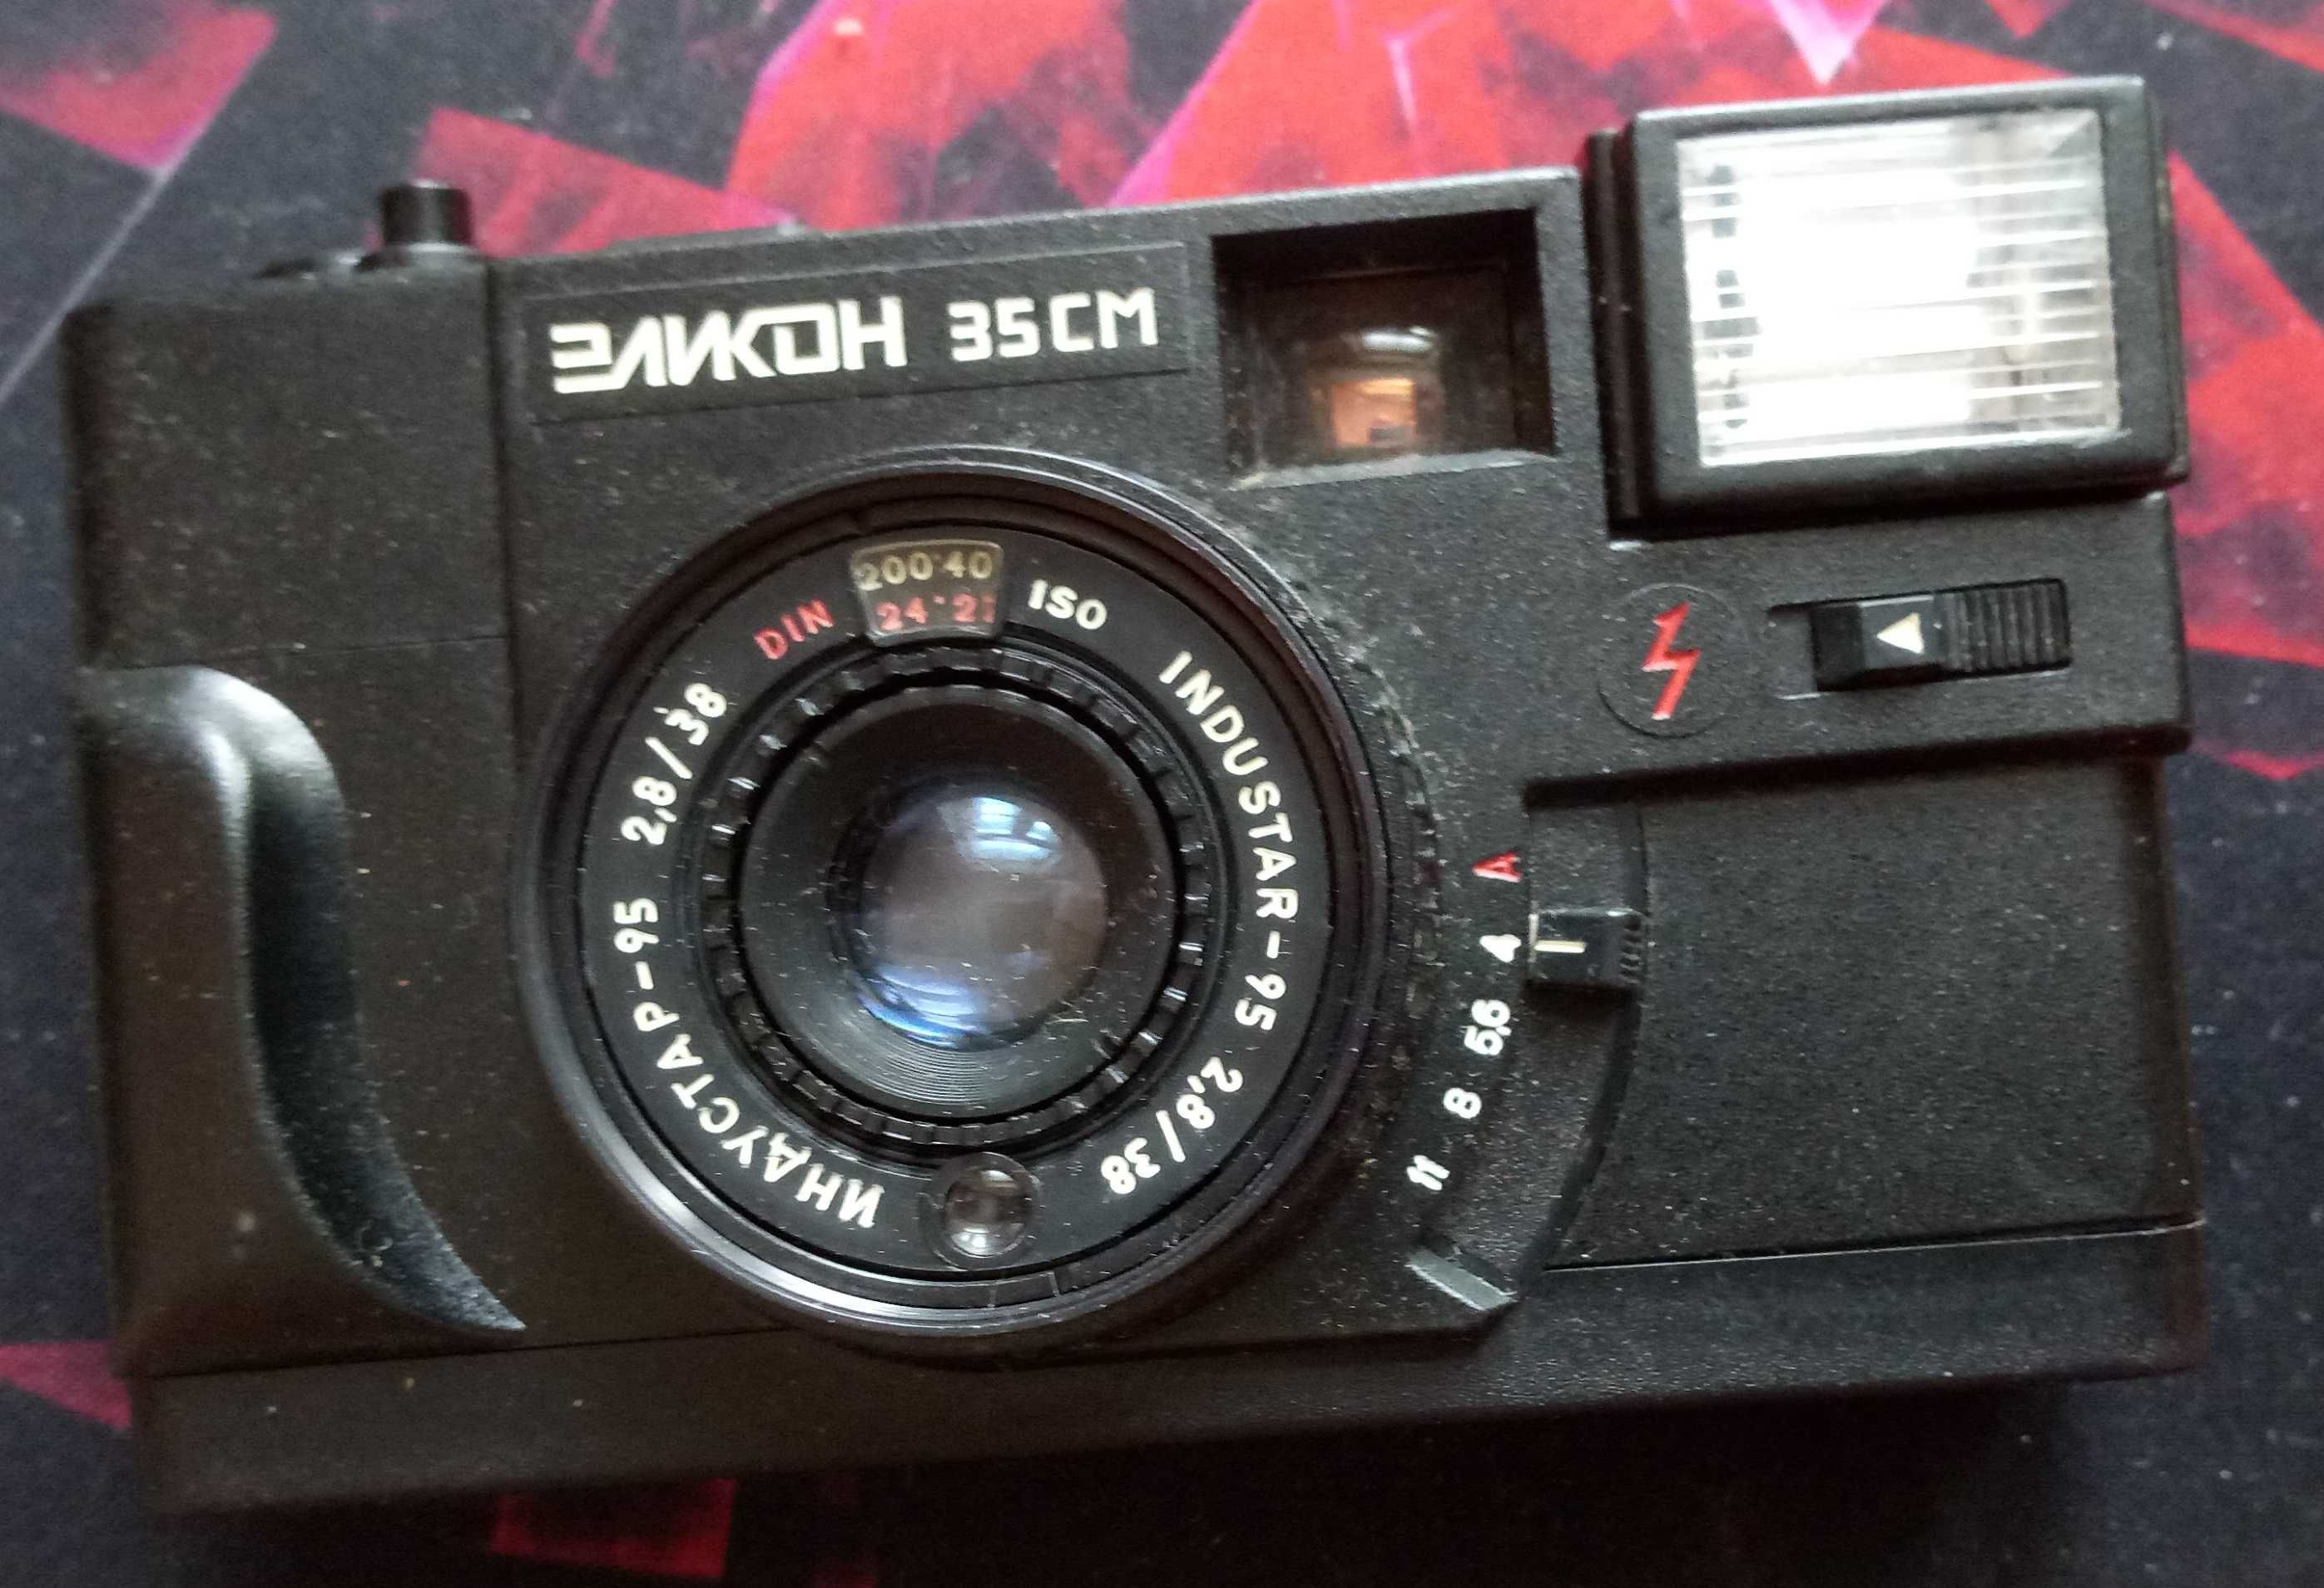 Фотоаппараты производства СССР –  «Эликон-35СМ», «Смена-8М».